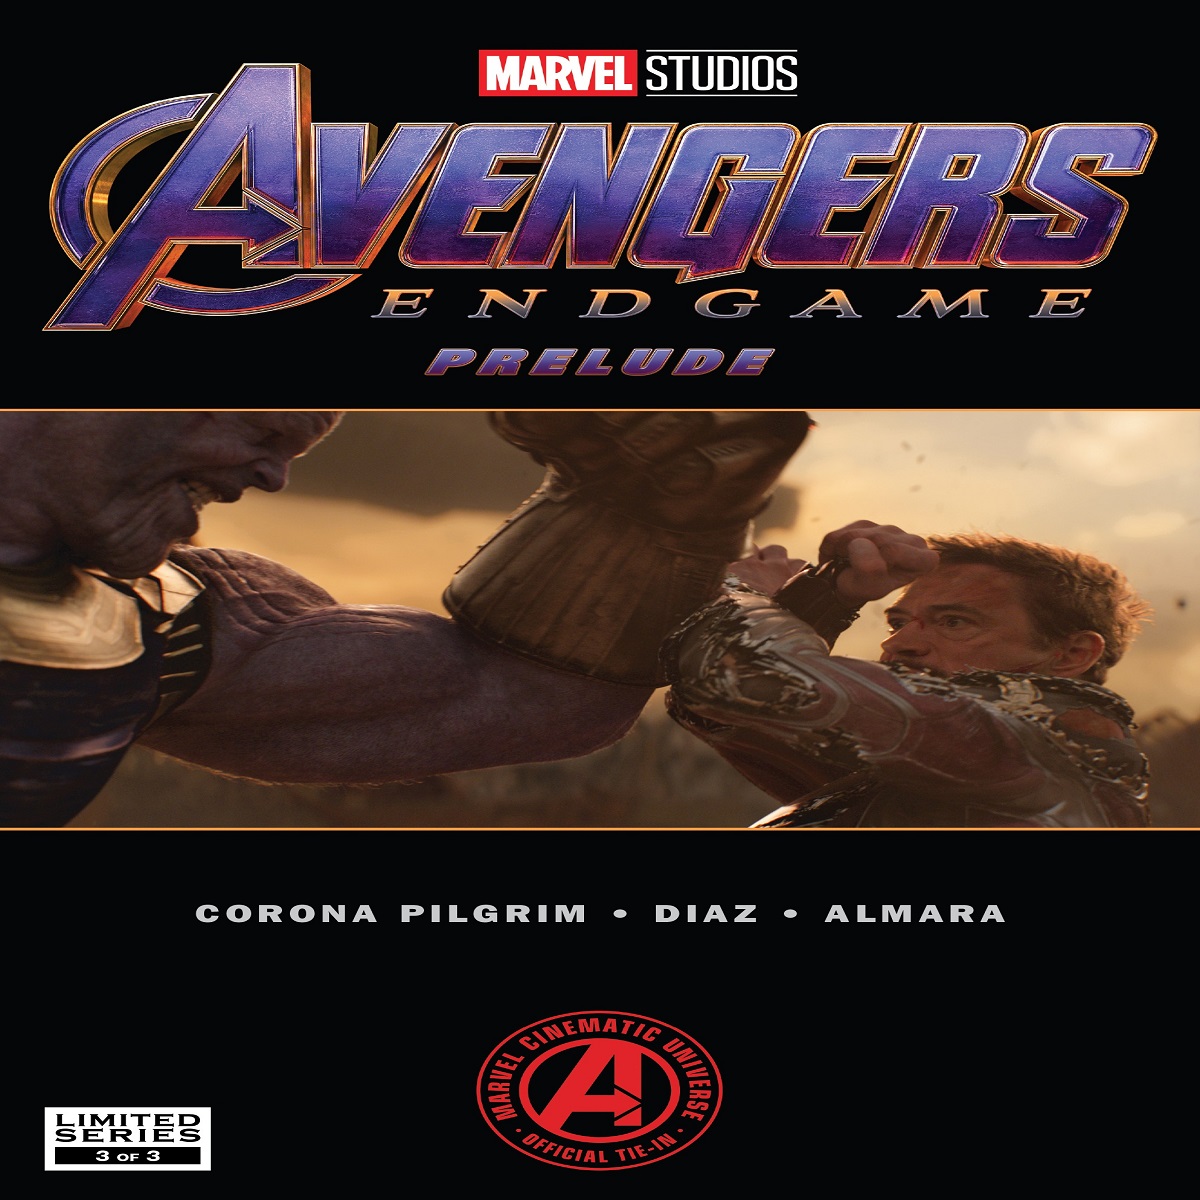 مجله Marvels Avengers Endgame Prelude 3 فوریه 2019